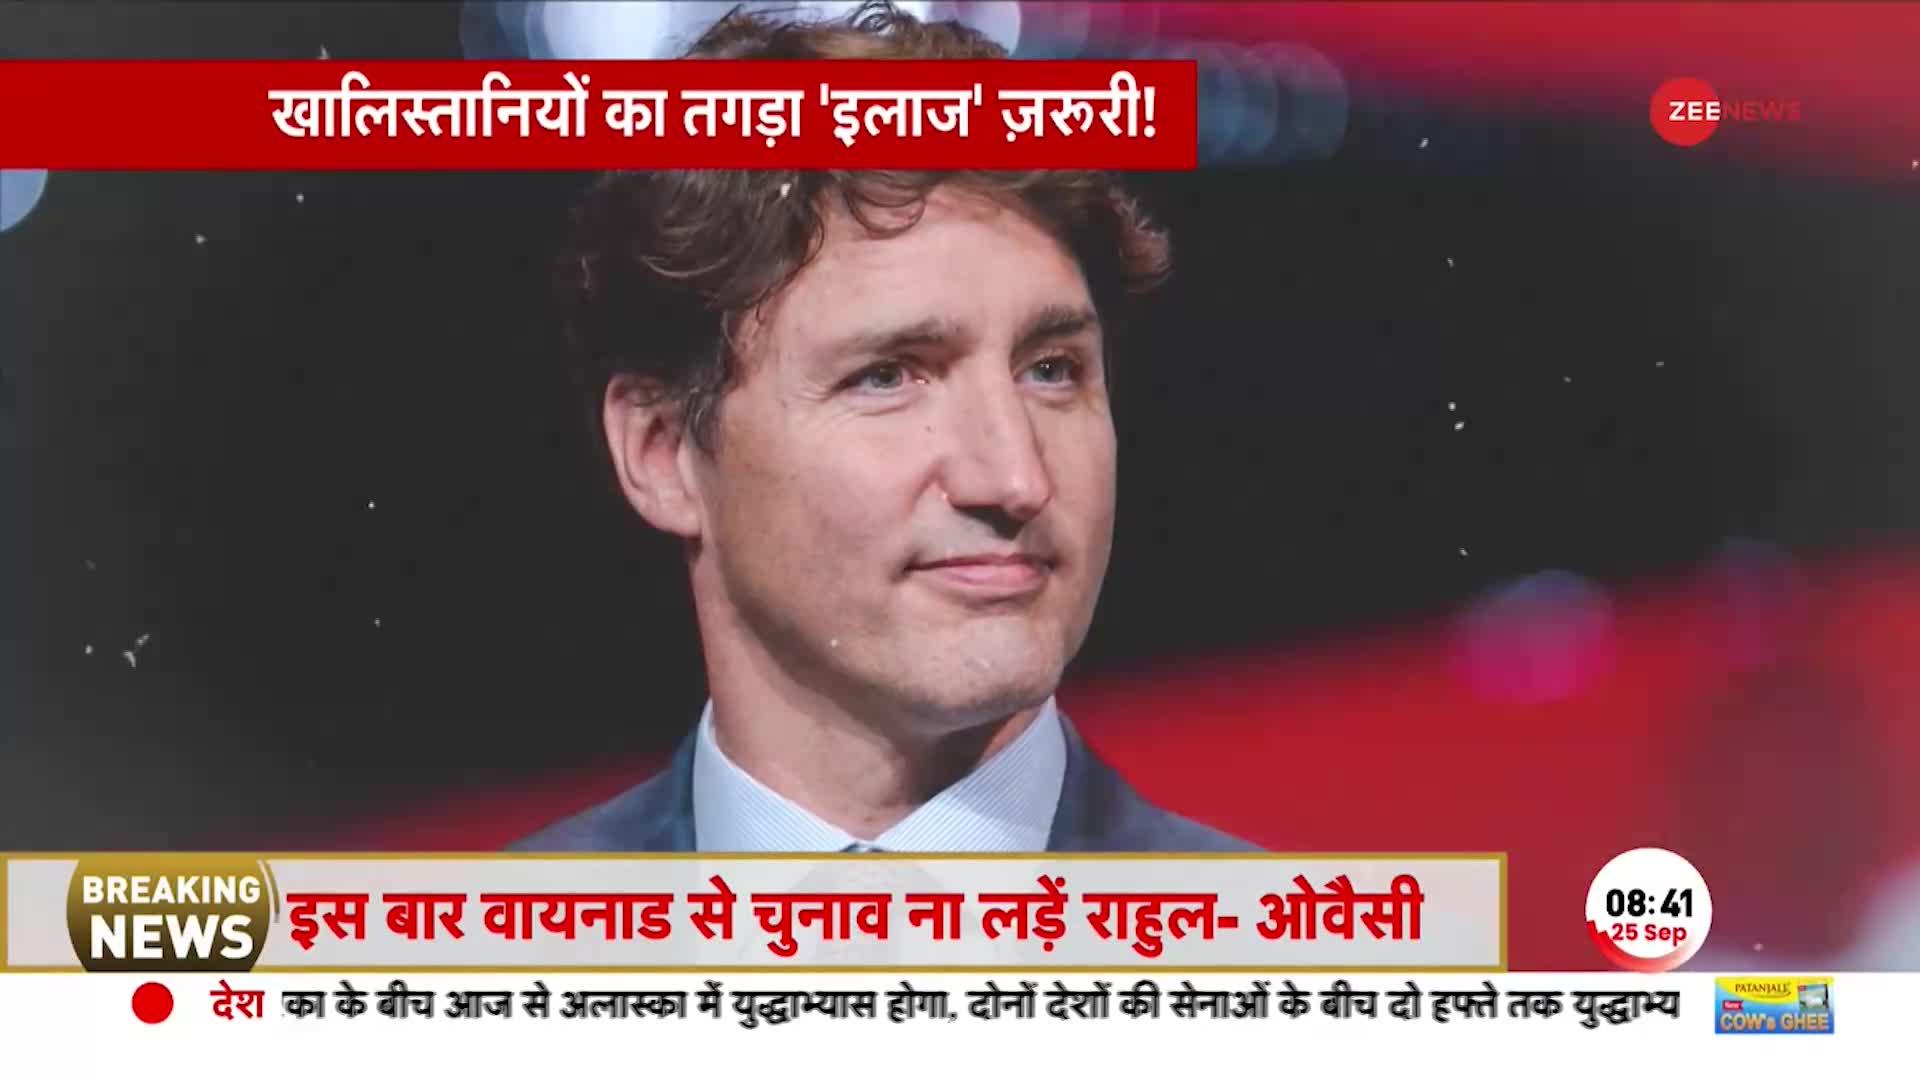 India Canada News: खालिस्तानियों के खिलाफ एक्शन में केंद्र सरकार! अवैध संपत्तियों की होगी जांच